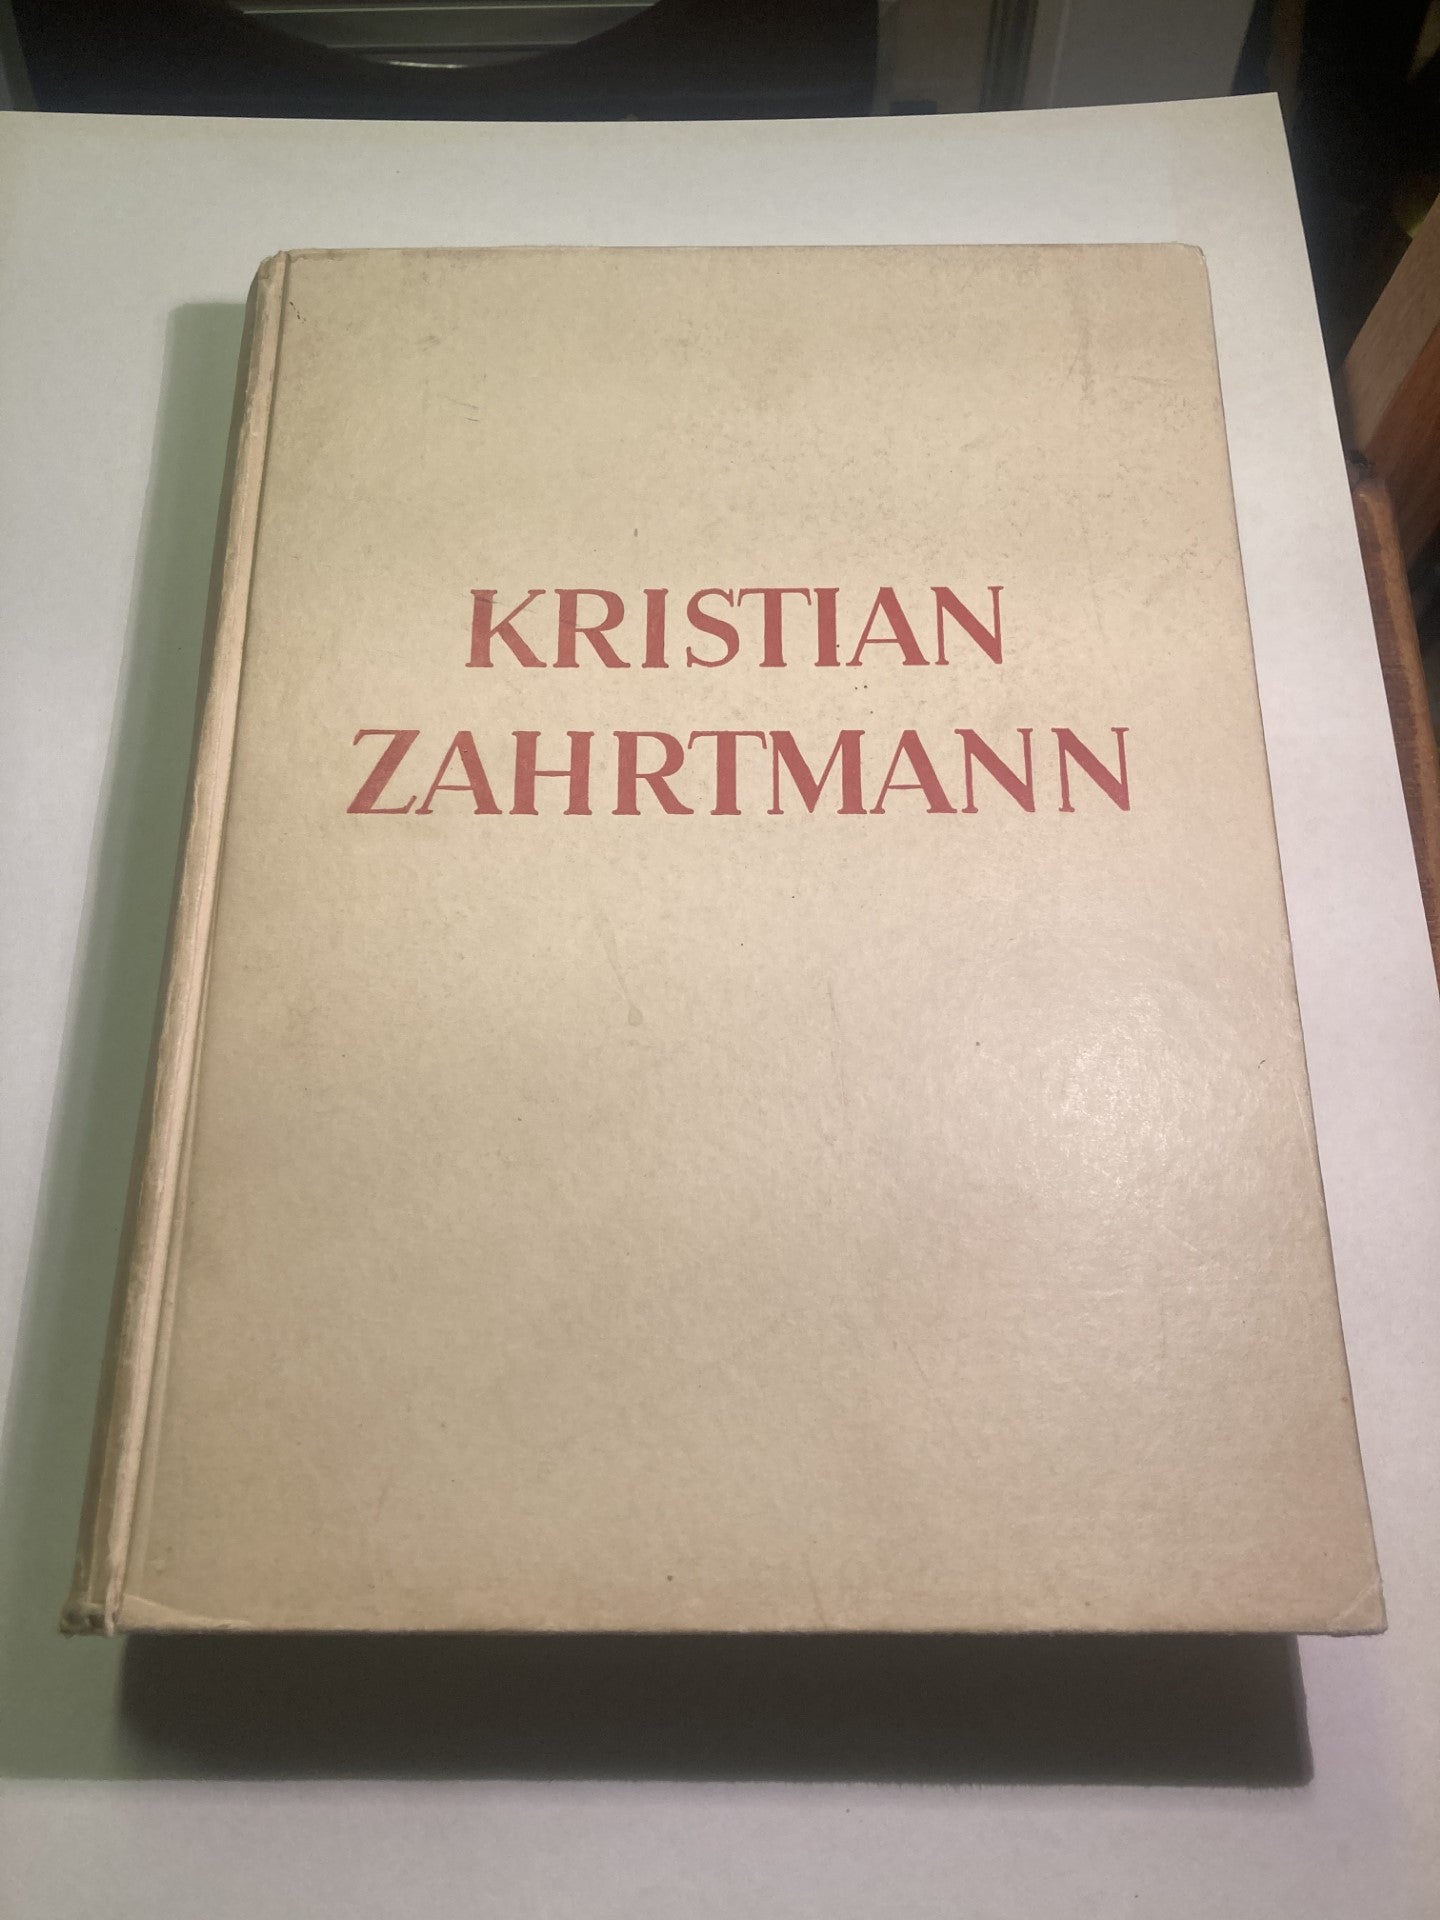 画家クリスチャン・ツァルトマンによる素敵な大きな本 - no. 0193